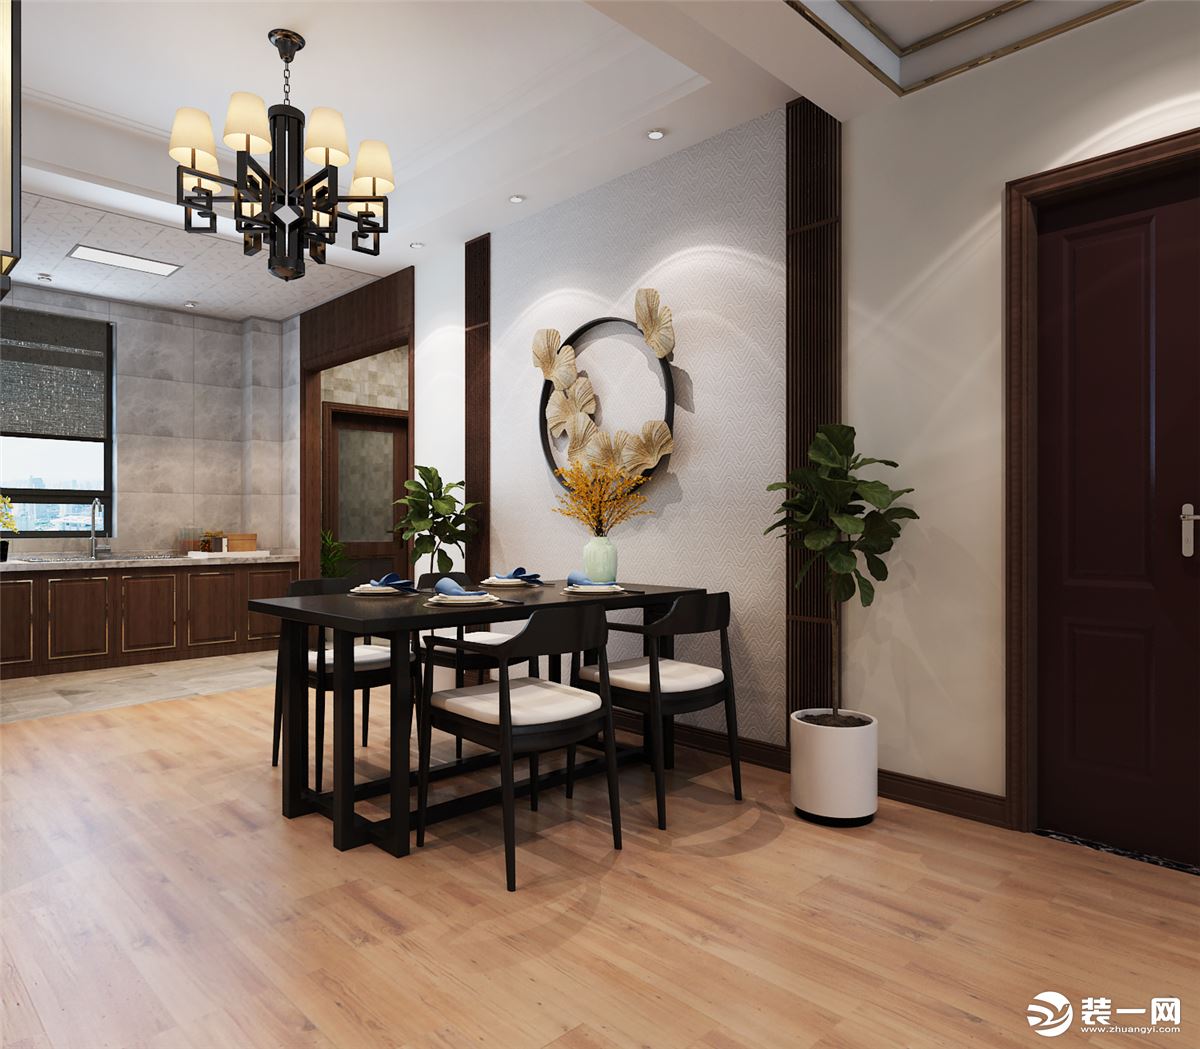 【武汉海天装饰】绿地汉口中心140平中式风格餐厅背景